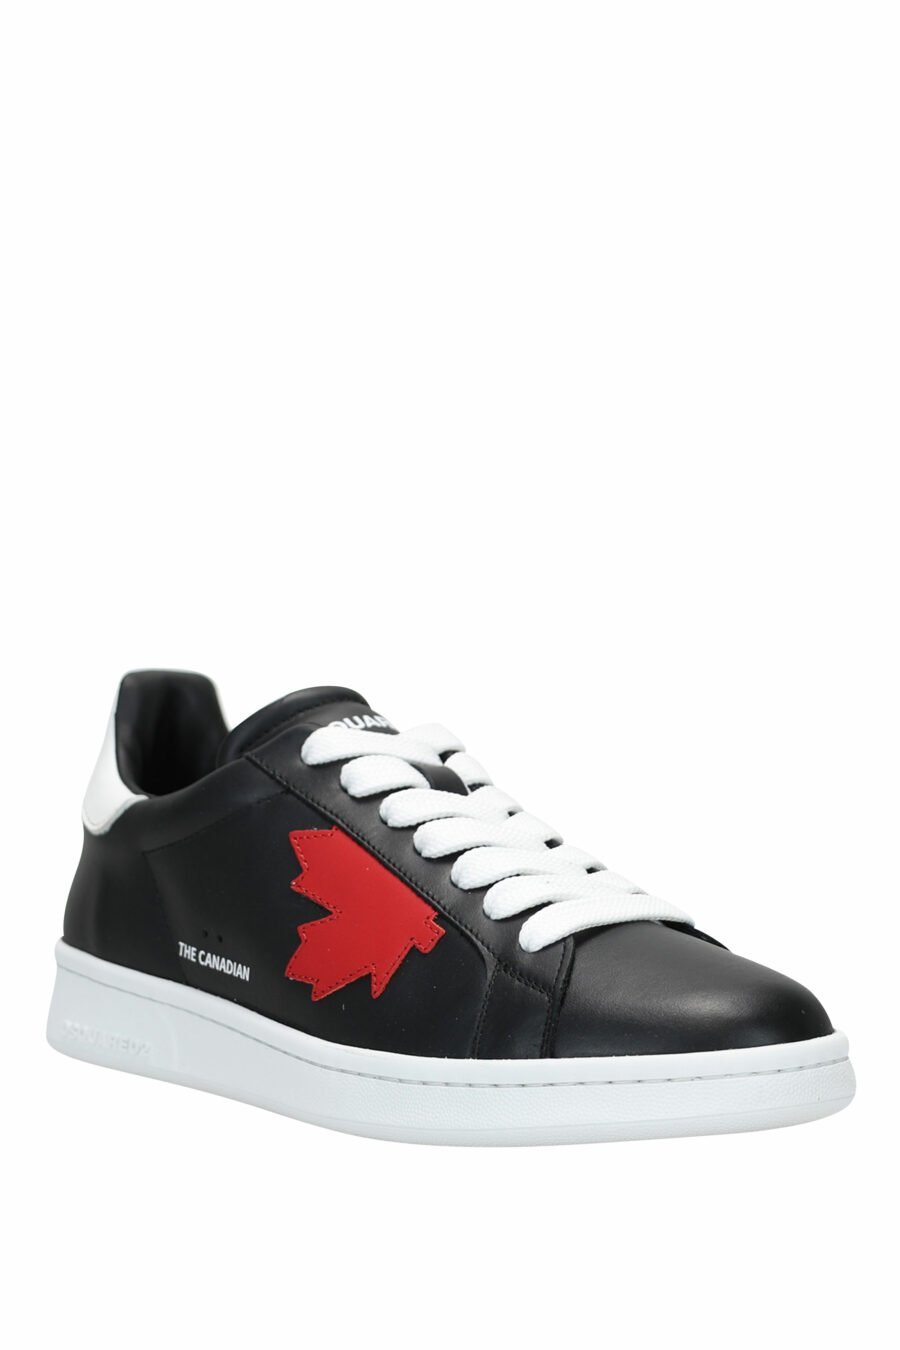 Zapatillas negras con hoja roja y suela blanca - 8055777240977 1